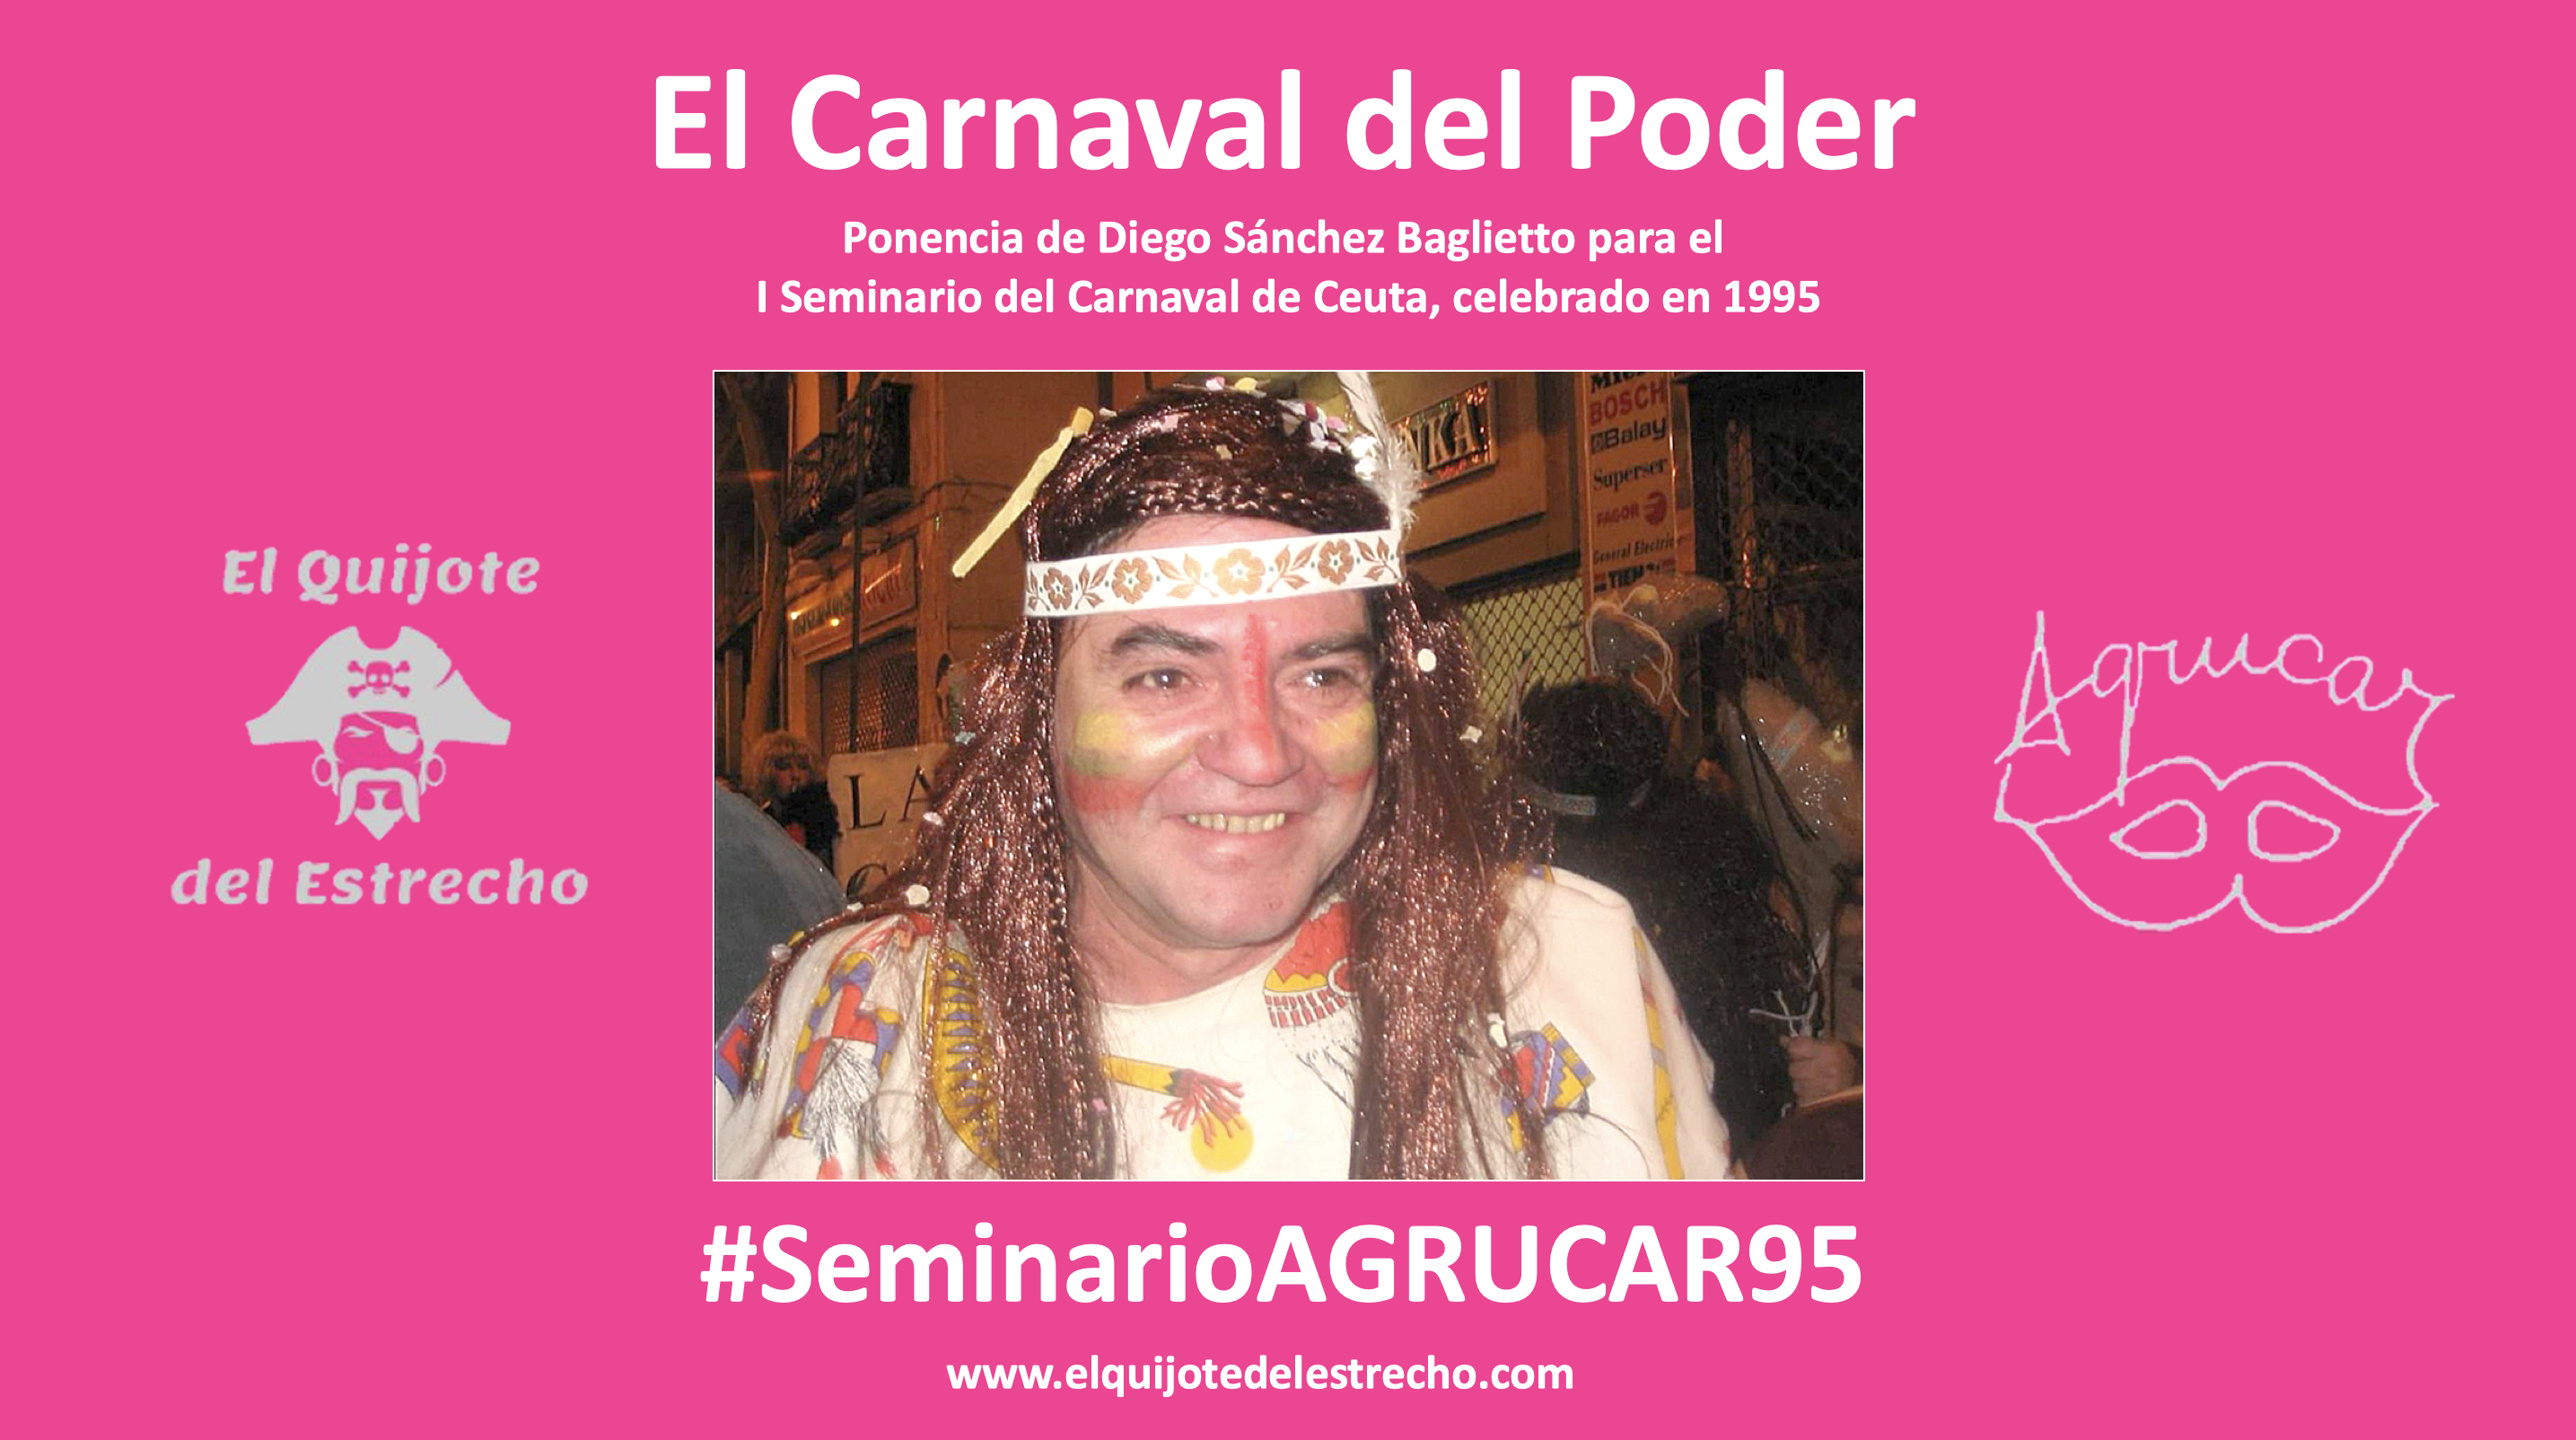 ‘El Carnaval del Poder’ | Ponencia de Diego Sánchez Baglietto para el Seminario del 95